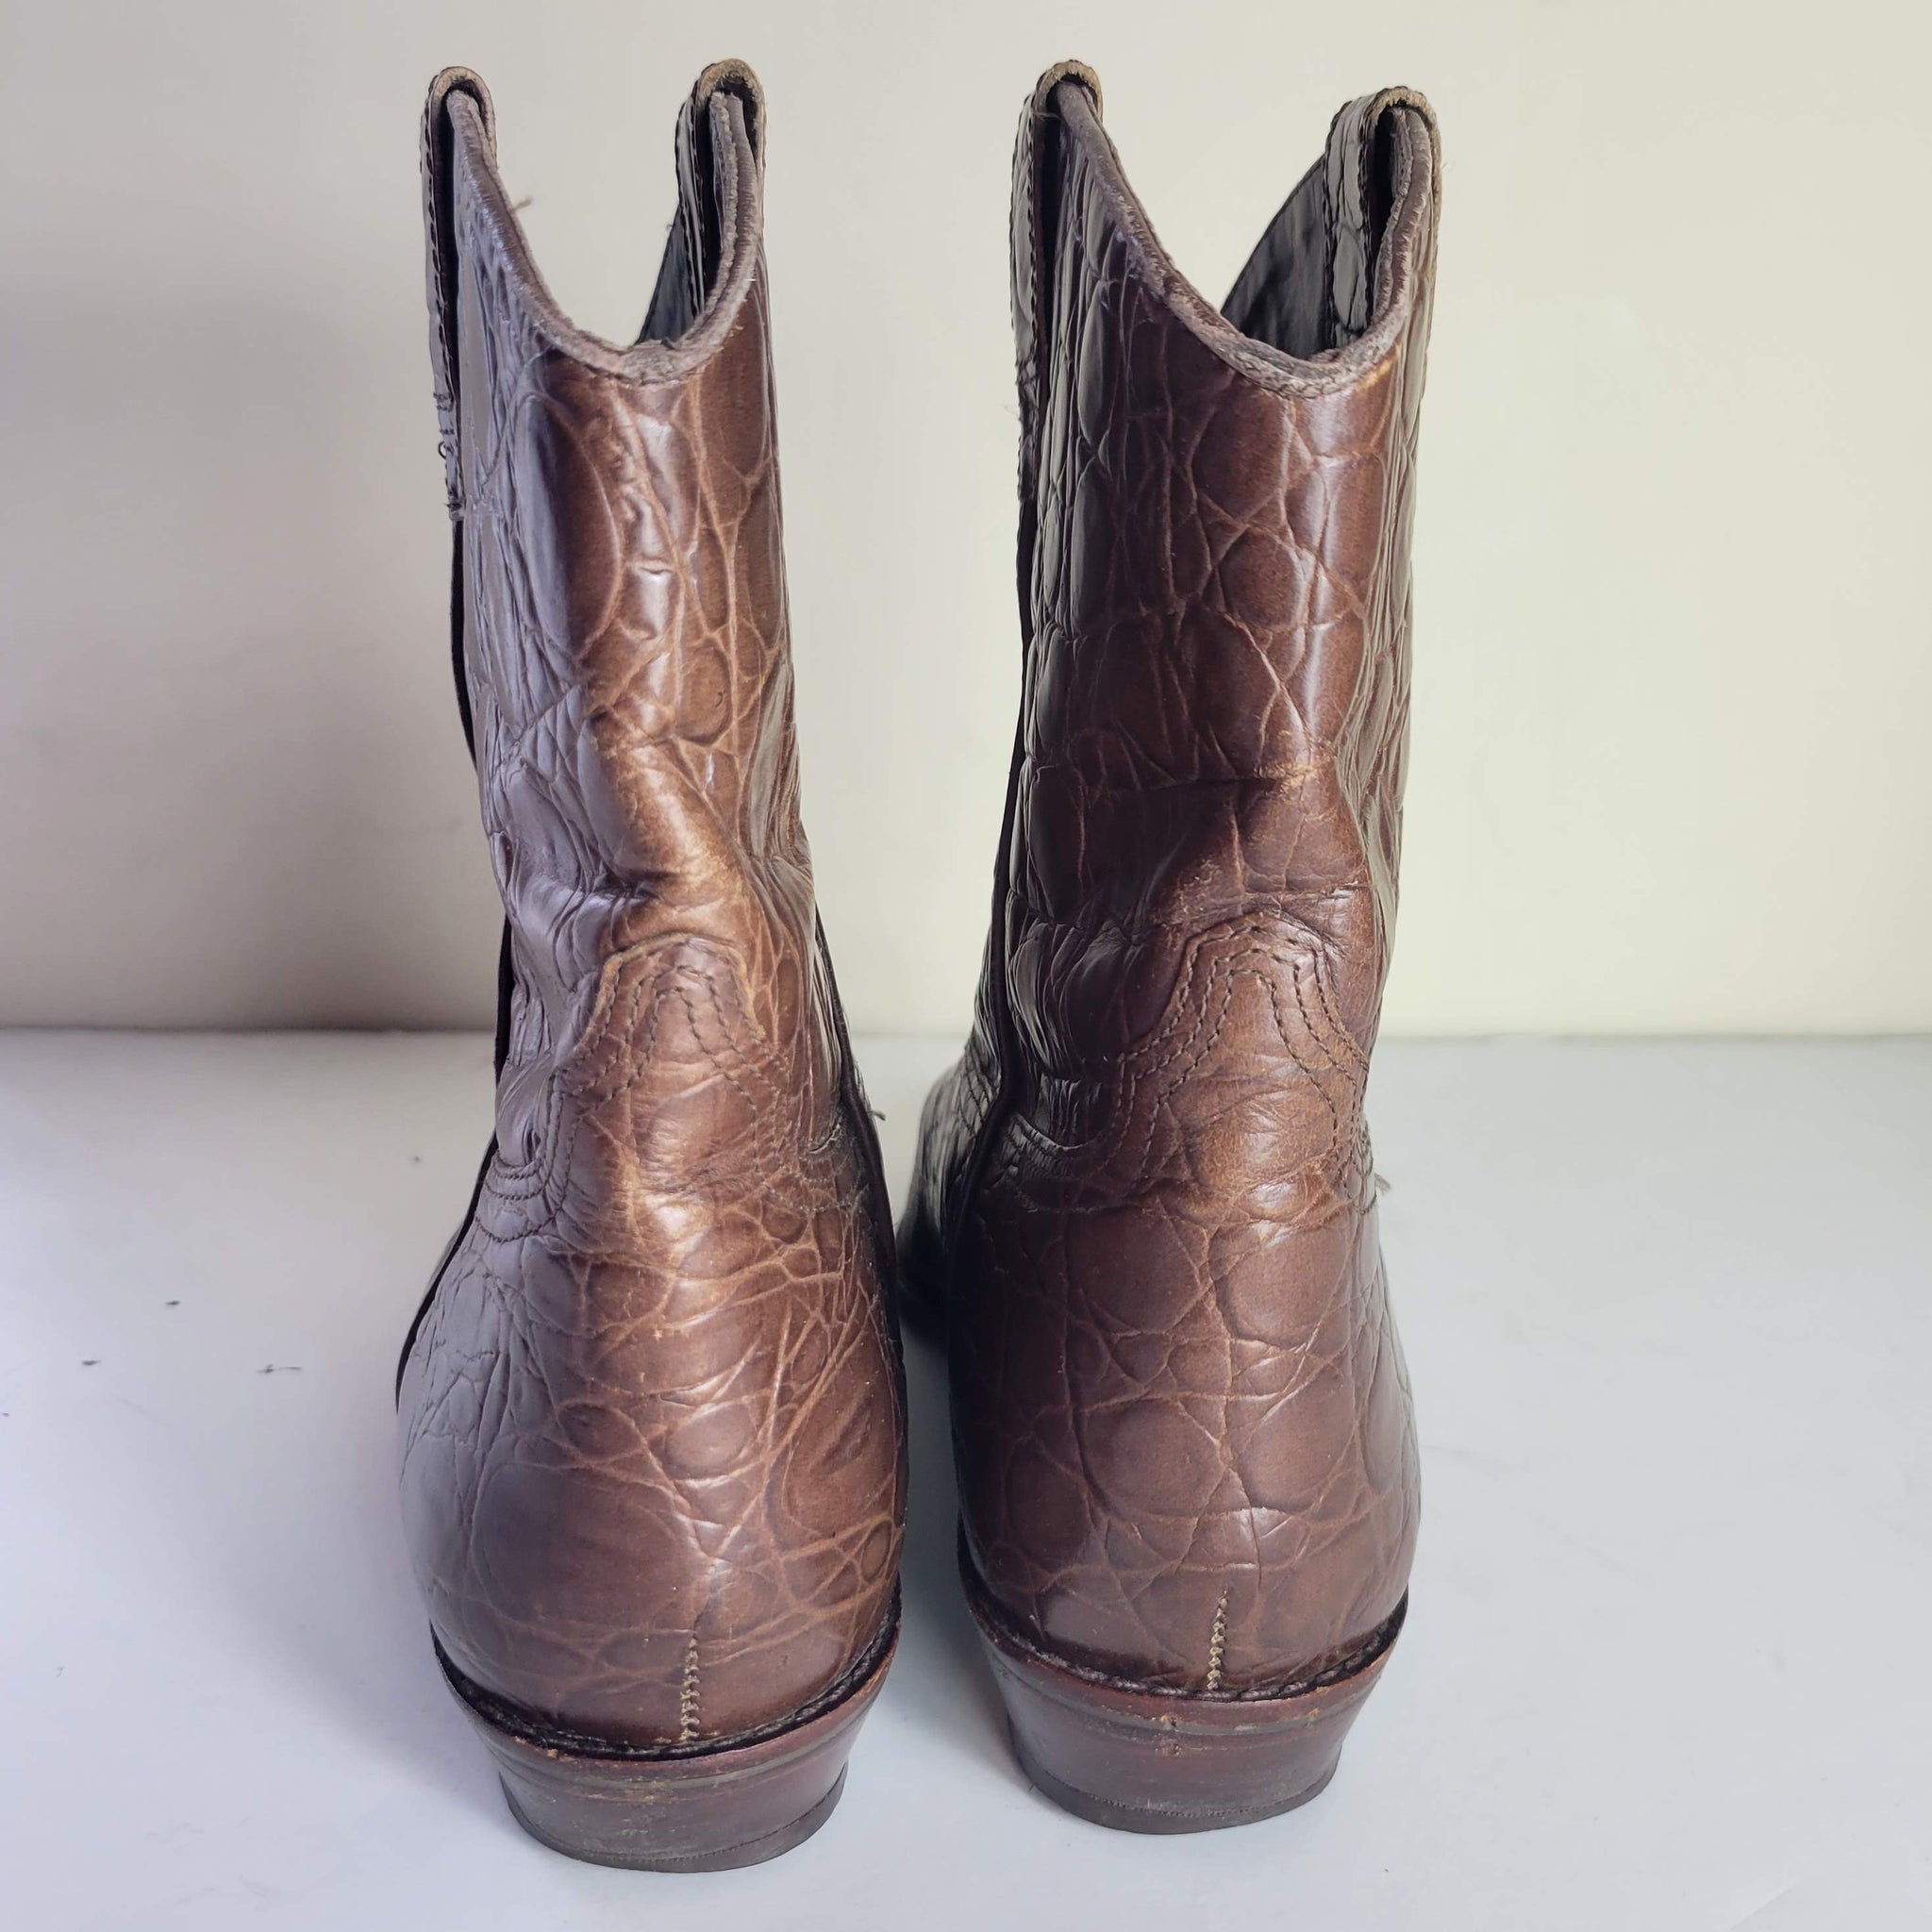 Vintage Unisa Croc Cowboy Boots Size 7.5